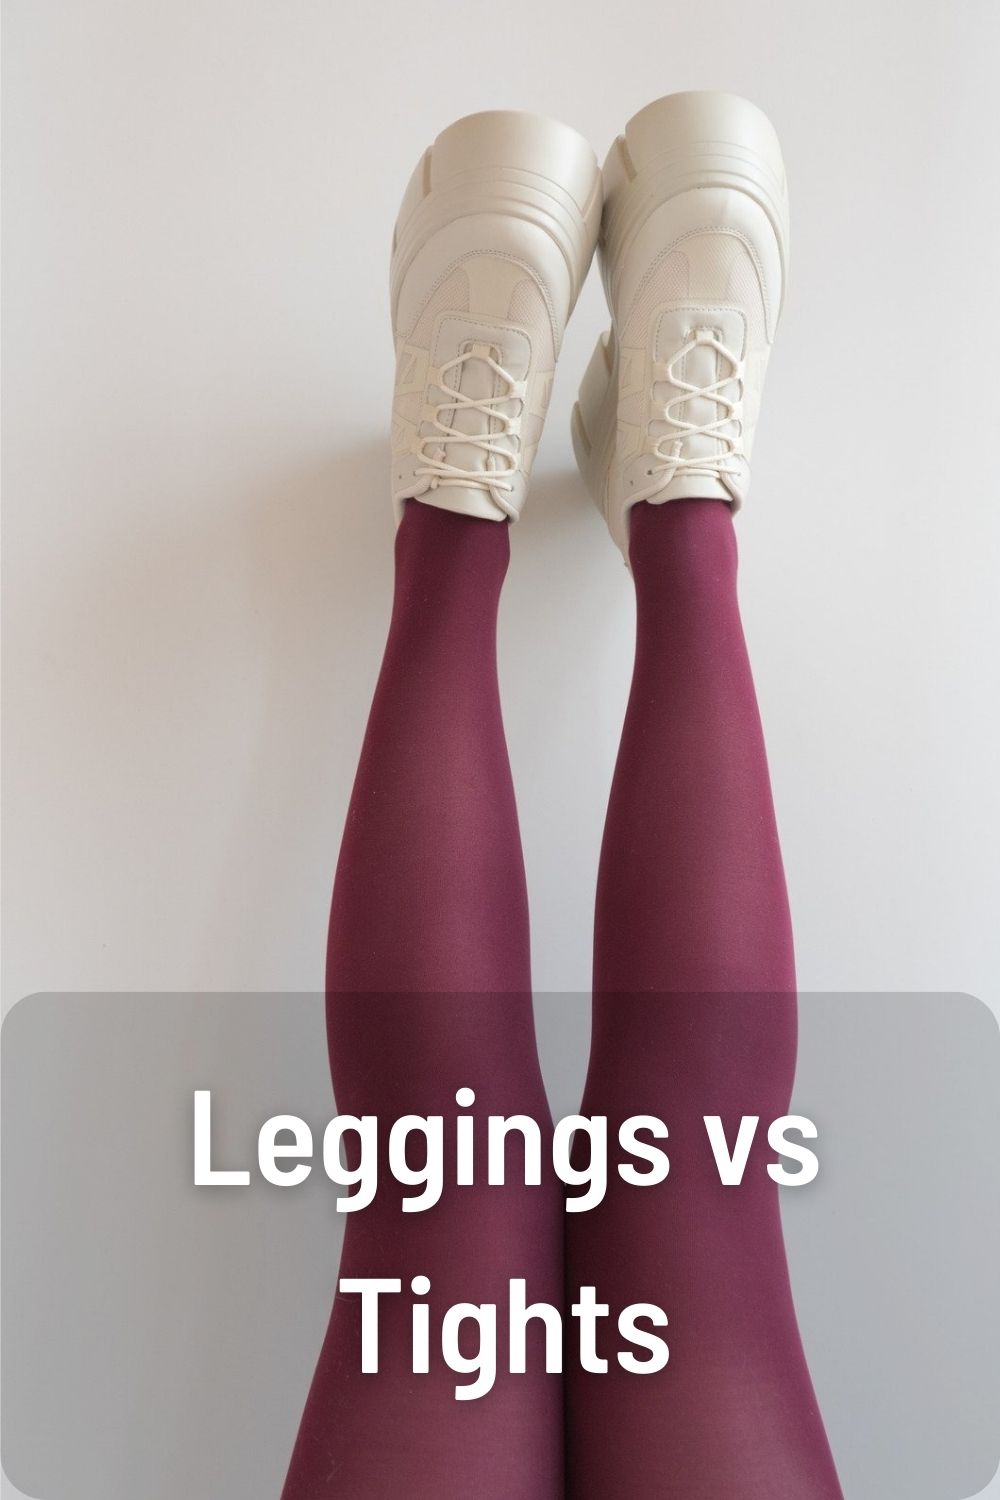 Leggings vs Tights